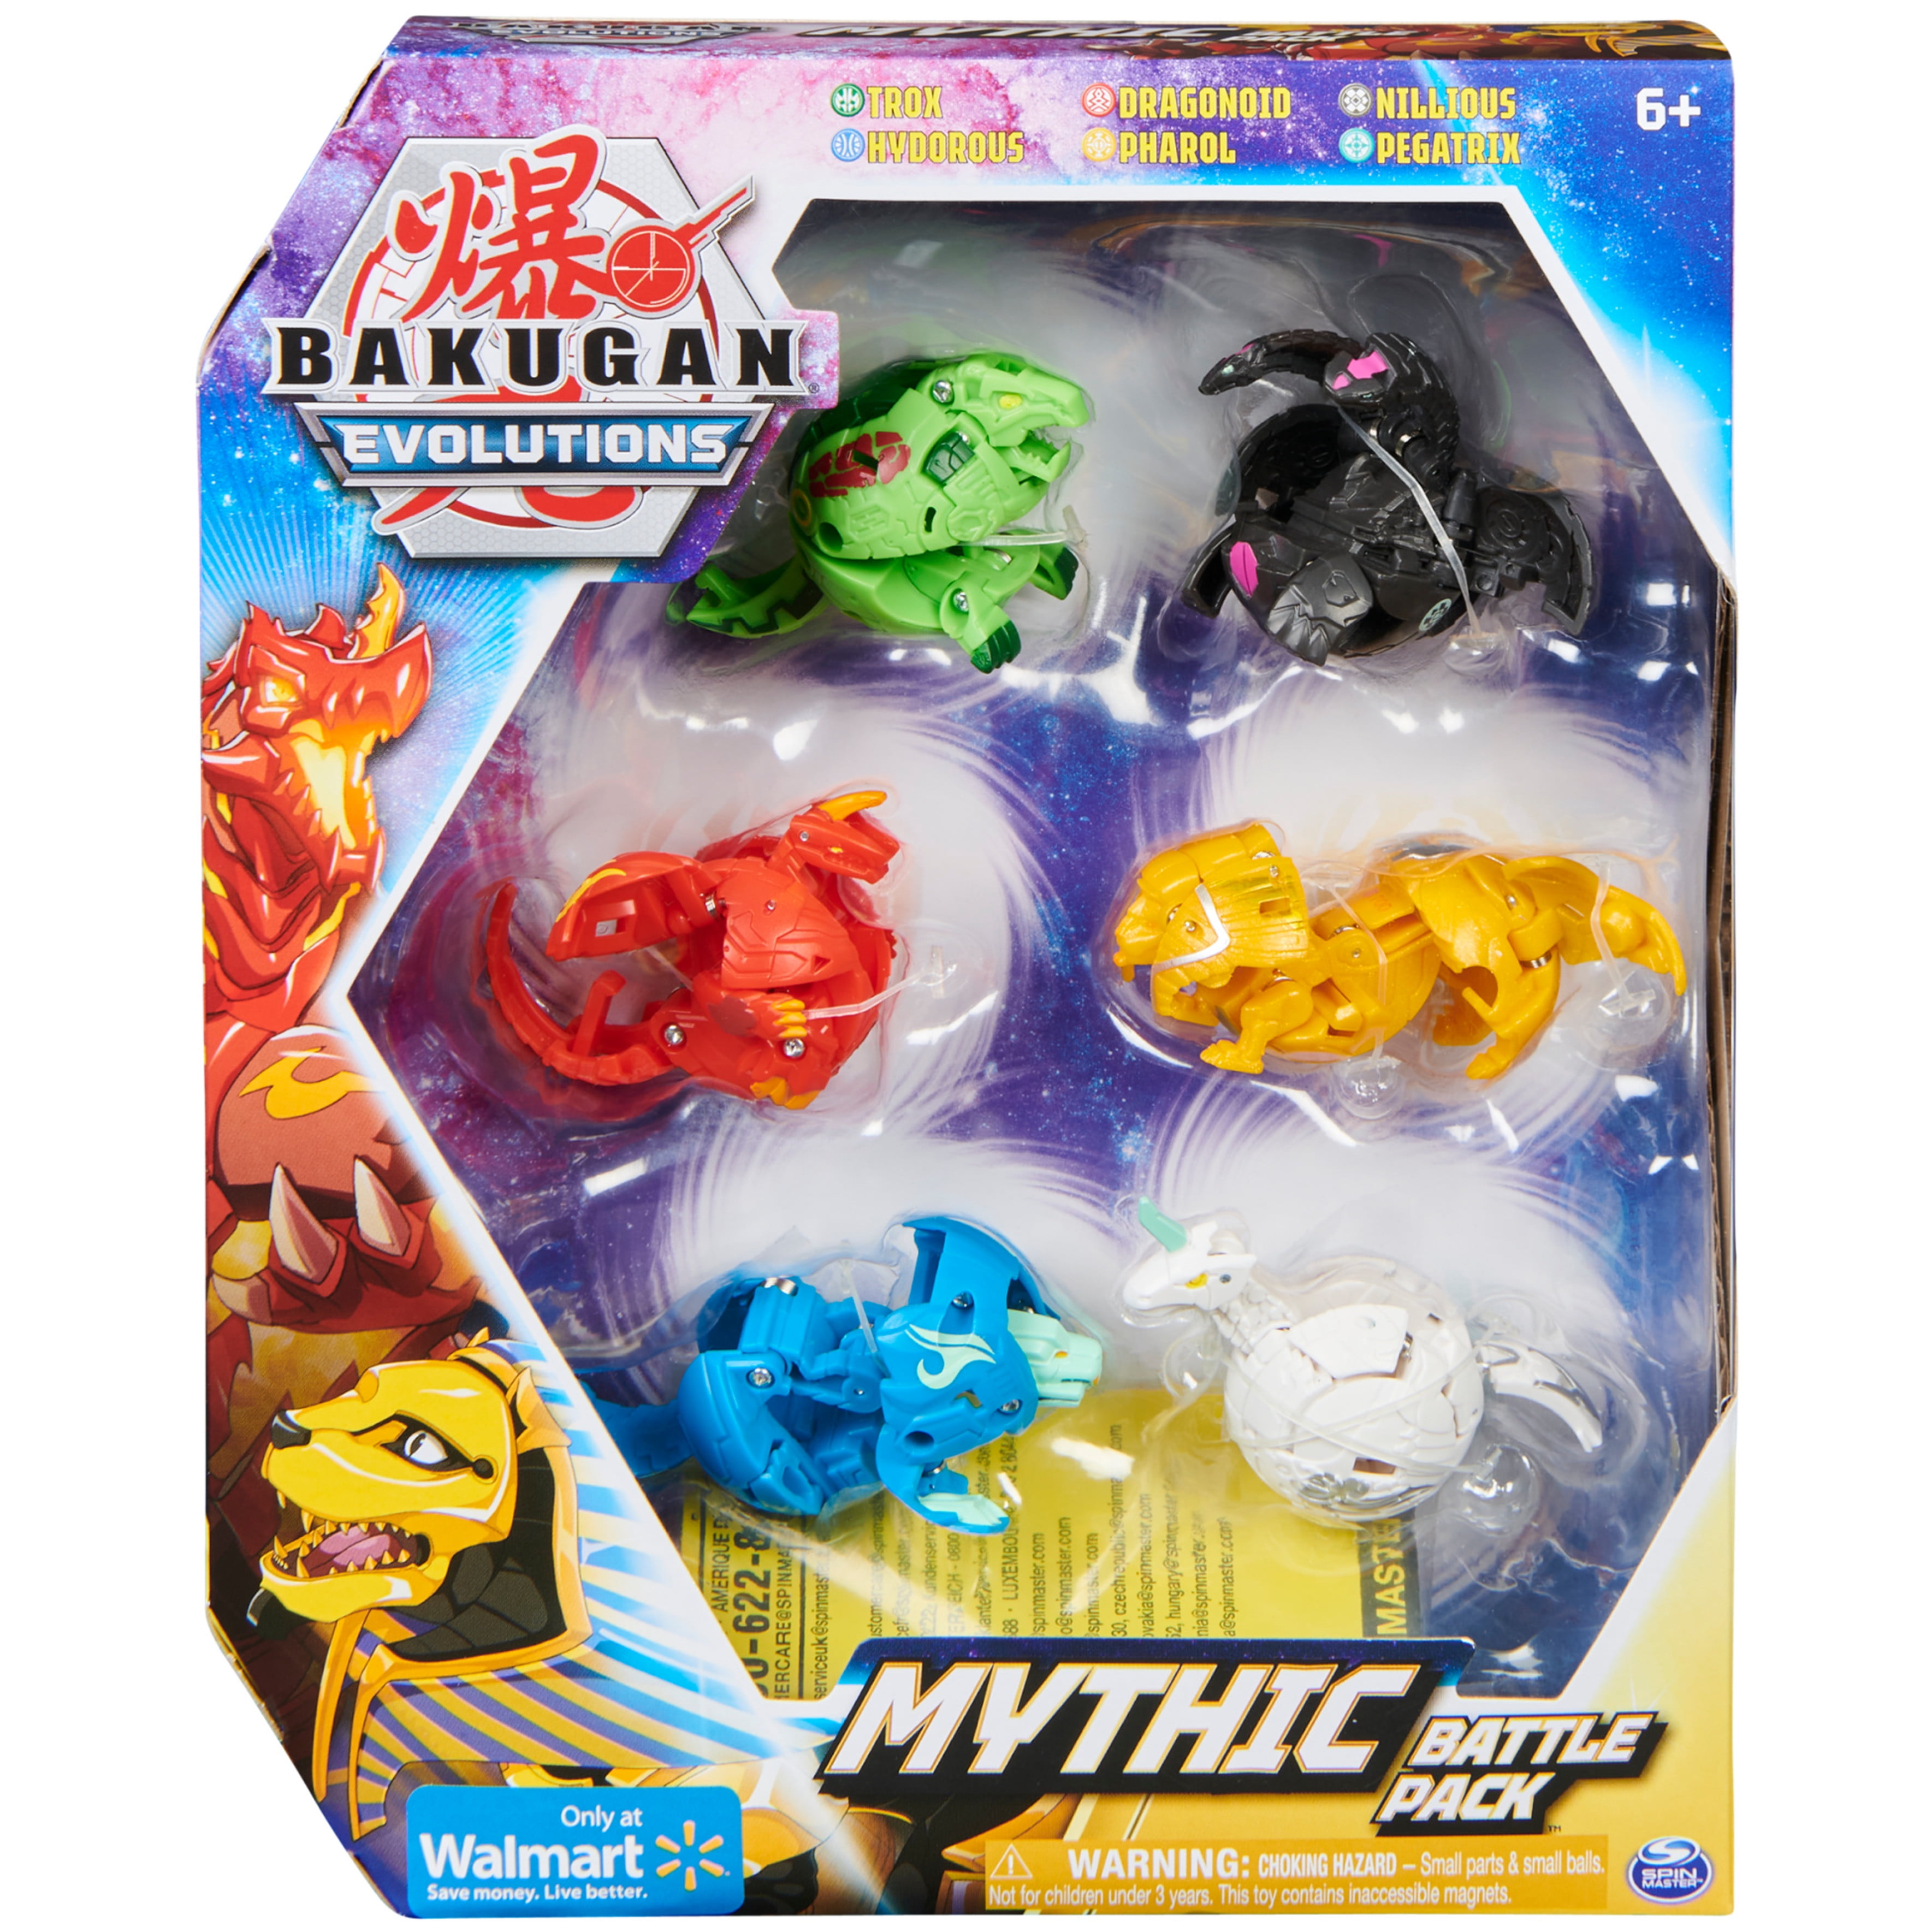 Styring Bunke af frakke Bakugan Evolutions, Mythic Battle Pack (Walmart Exclusive) - Walmart.com